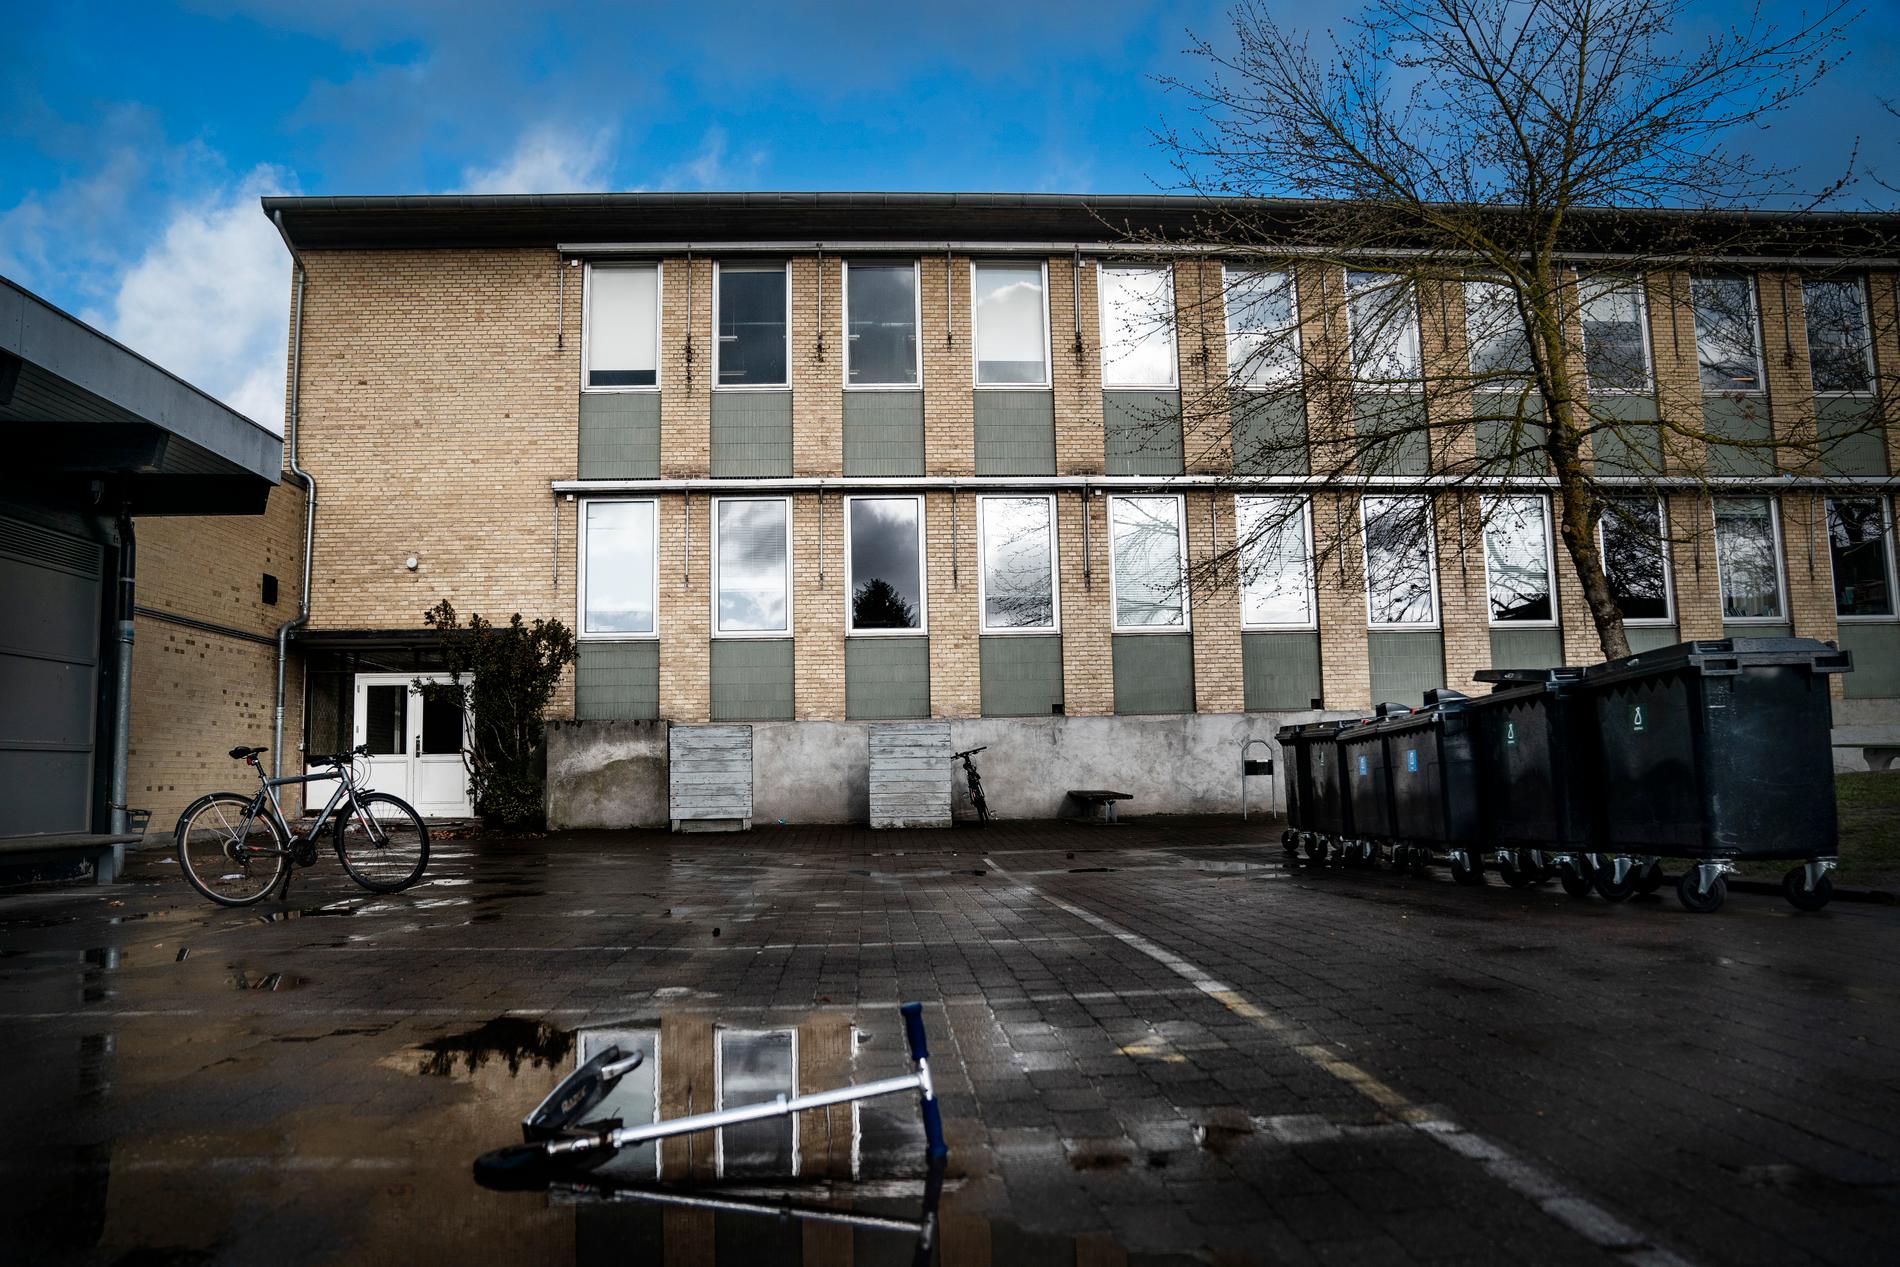 Danmark slåss mot coronaviruset, bland annat genom att stänga skolor. Bild tagen på Hareskov Skole i Hareskovby i förra veckan.